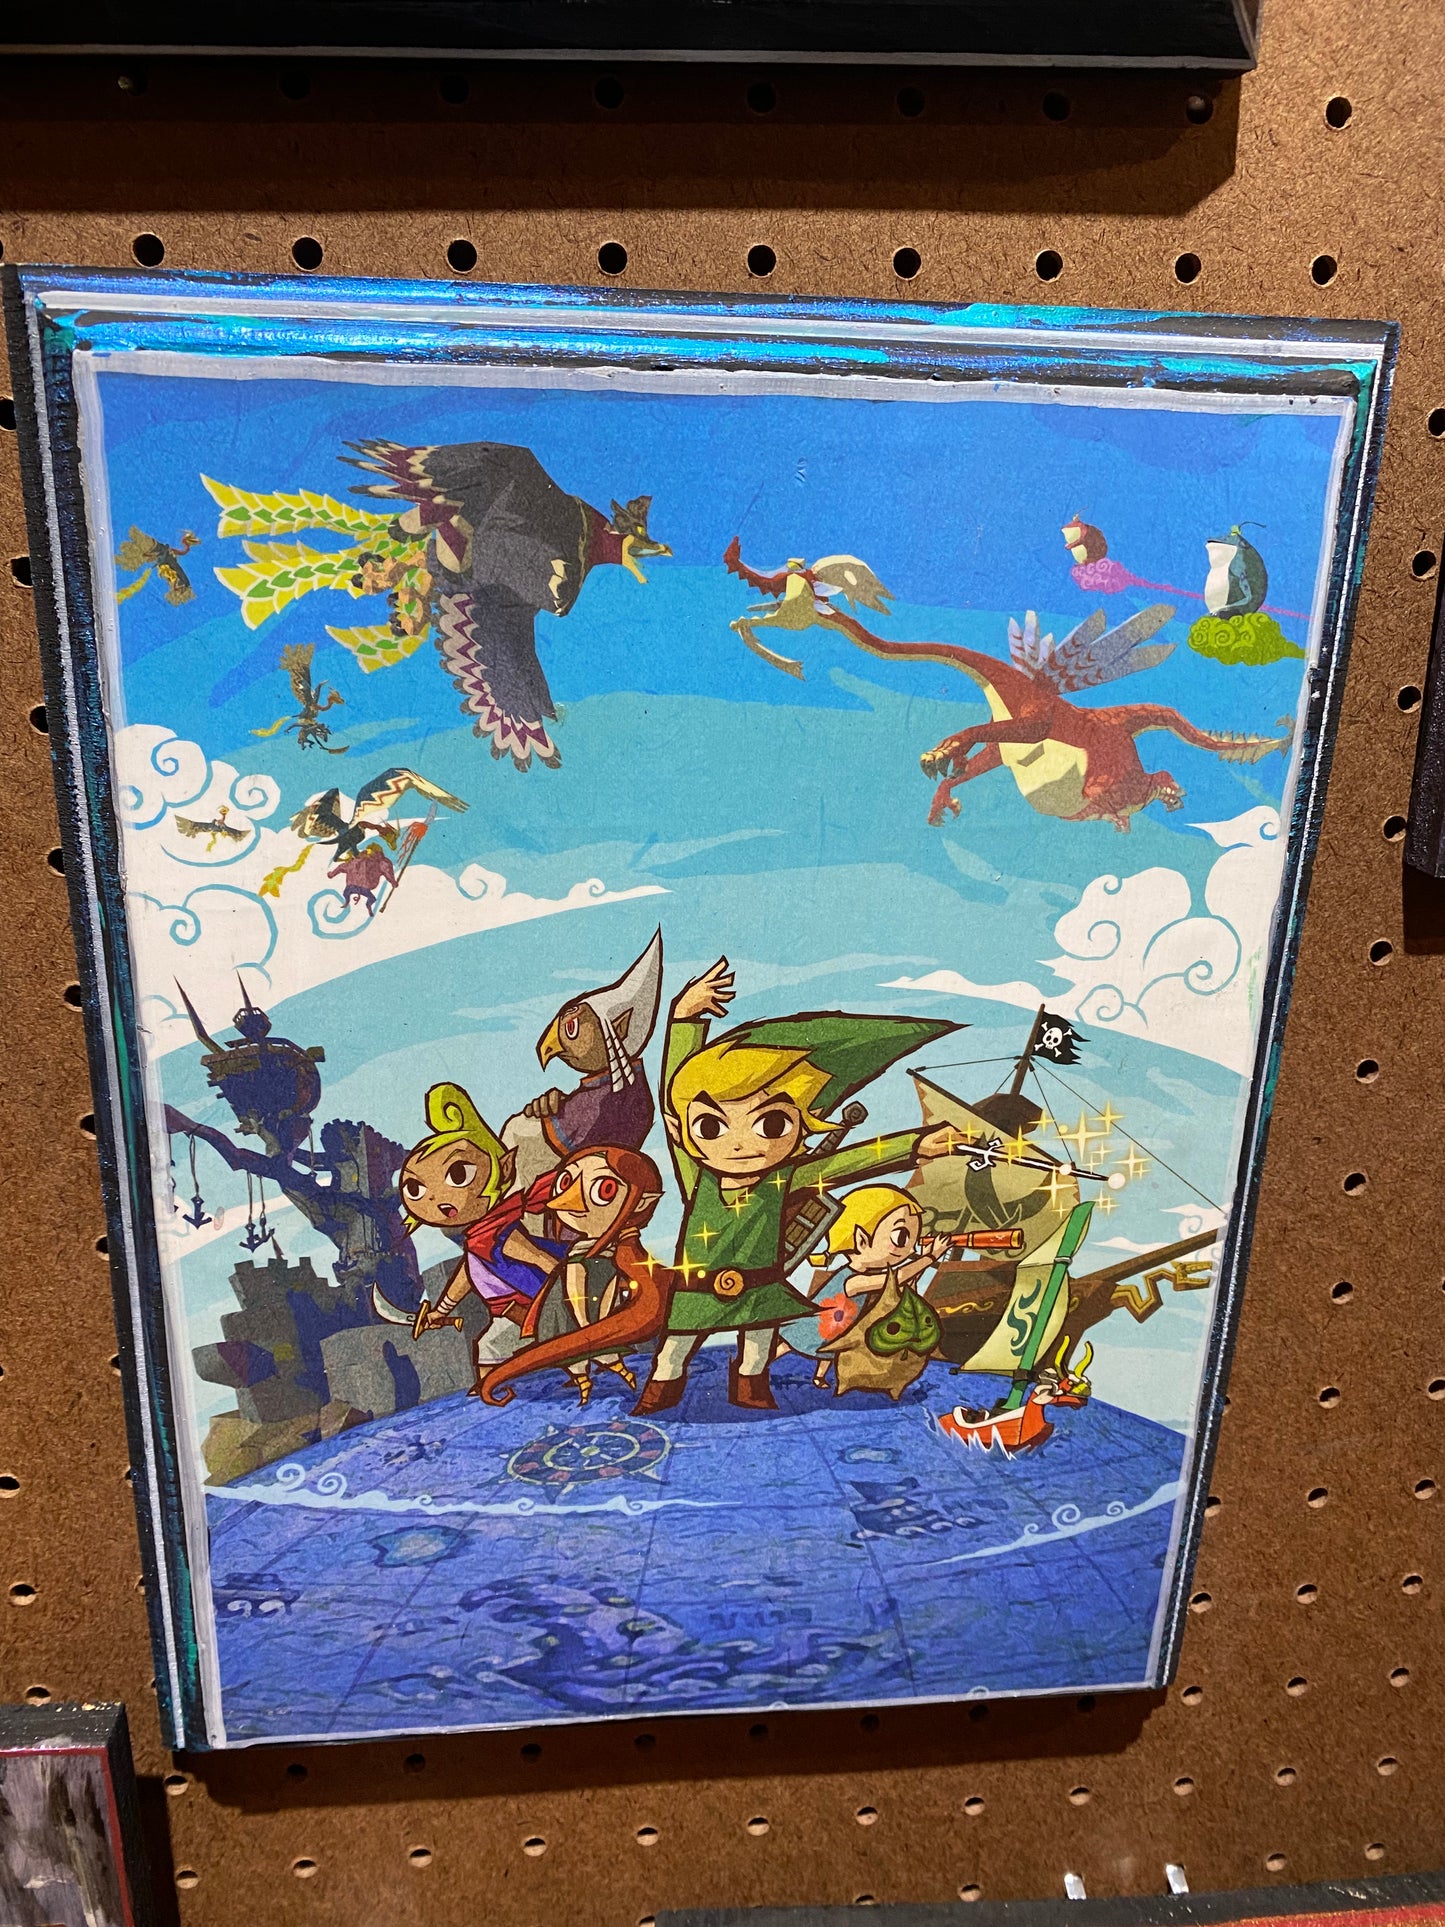 SALE: Half off The Legend of Zelda windwaker wood art plaque 12x9